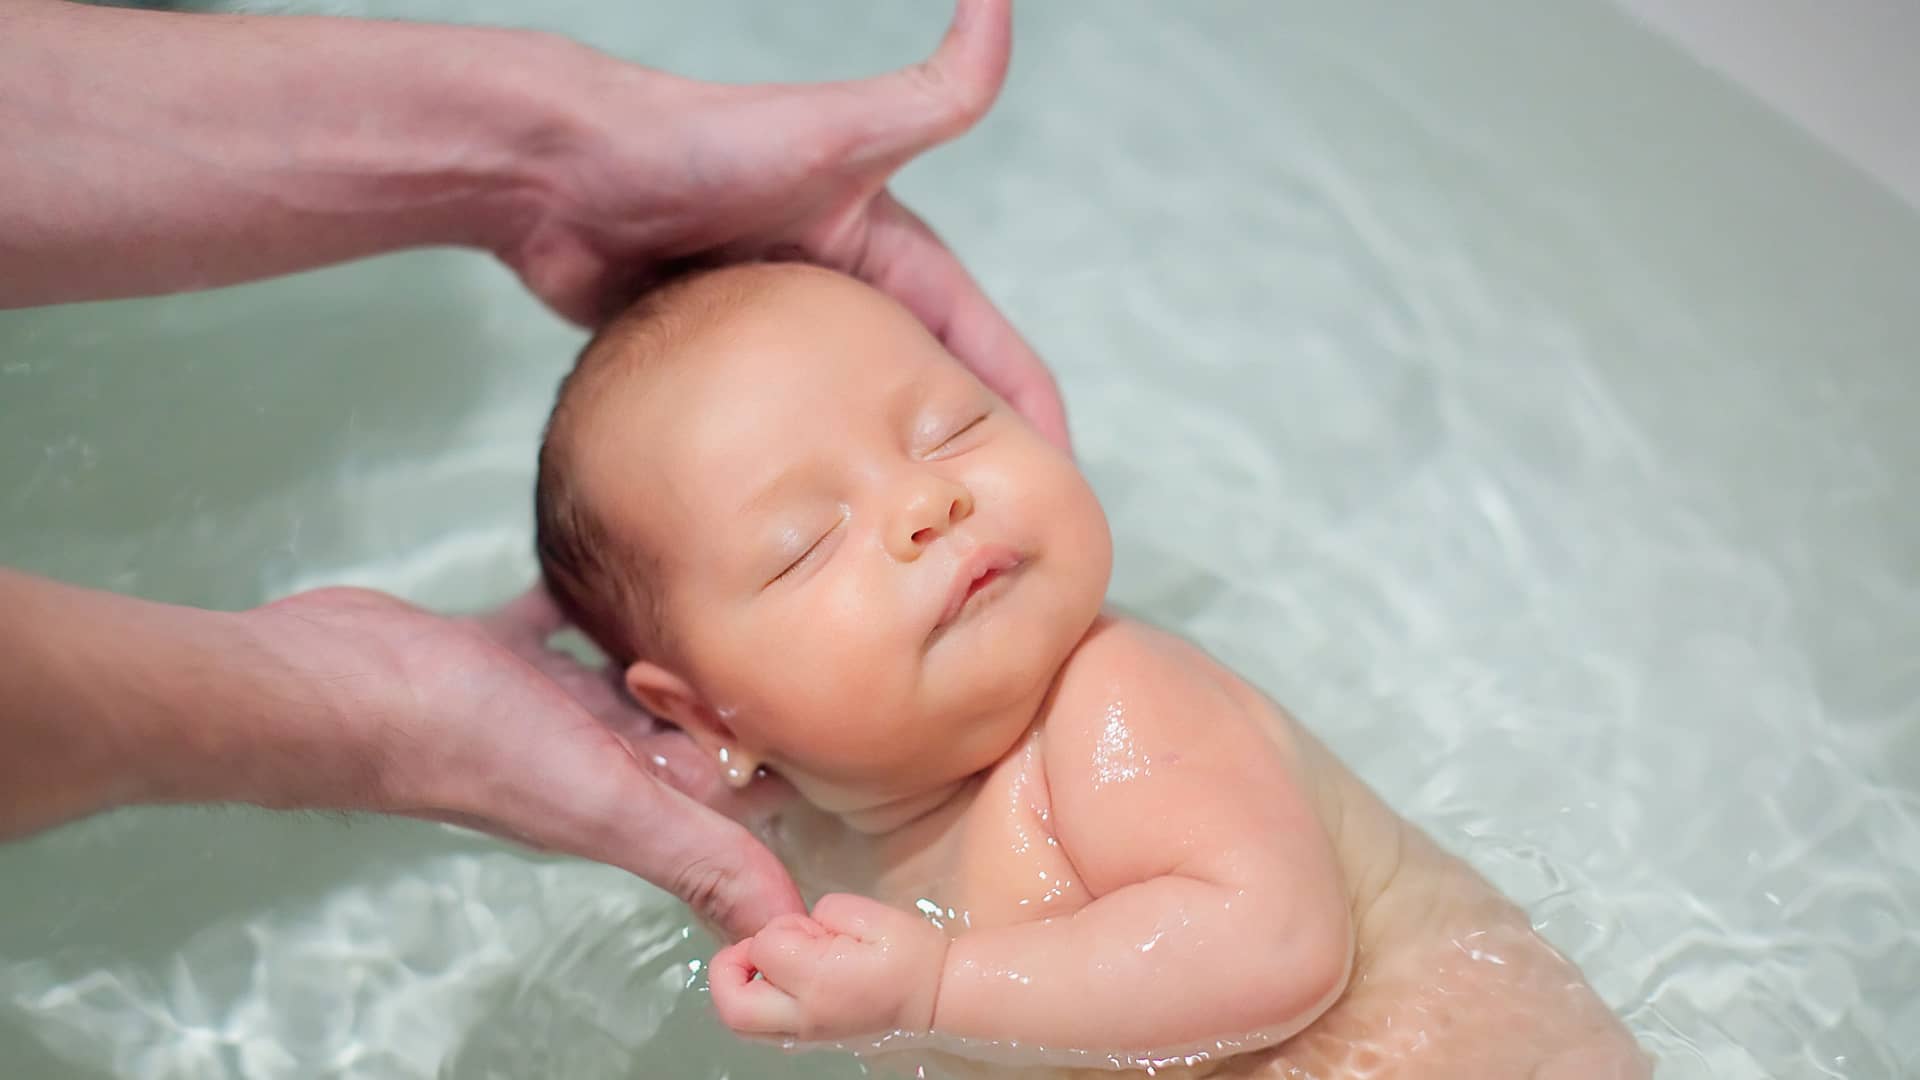 bebe muy tranquilo bañandose porque sus padres conocen la temperatura adecuada del baño del bebe